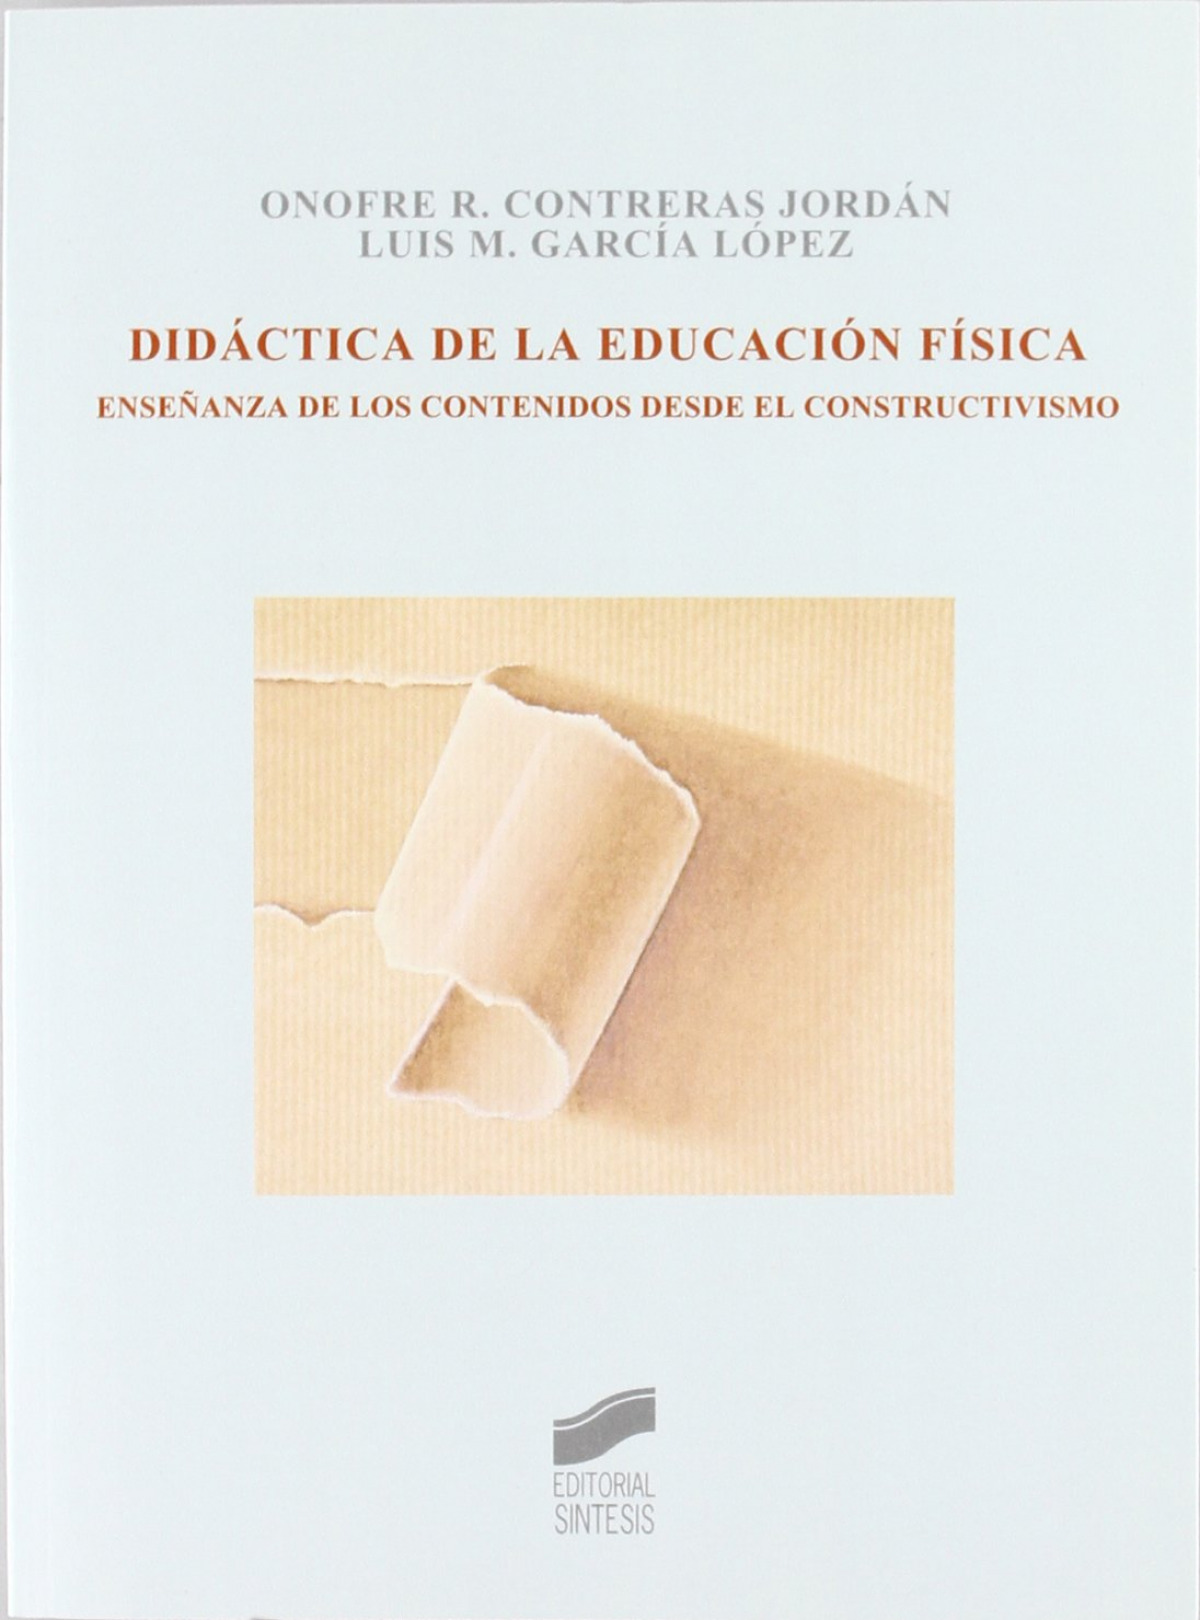 Didactica de la educacion fisica - Contreras Jordan, Onofre R.